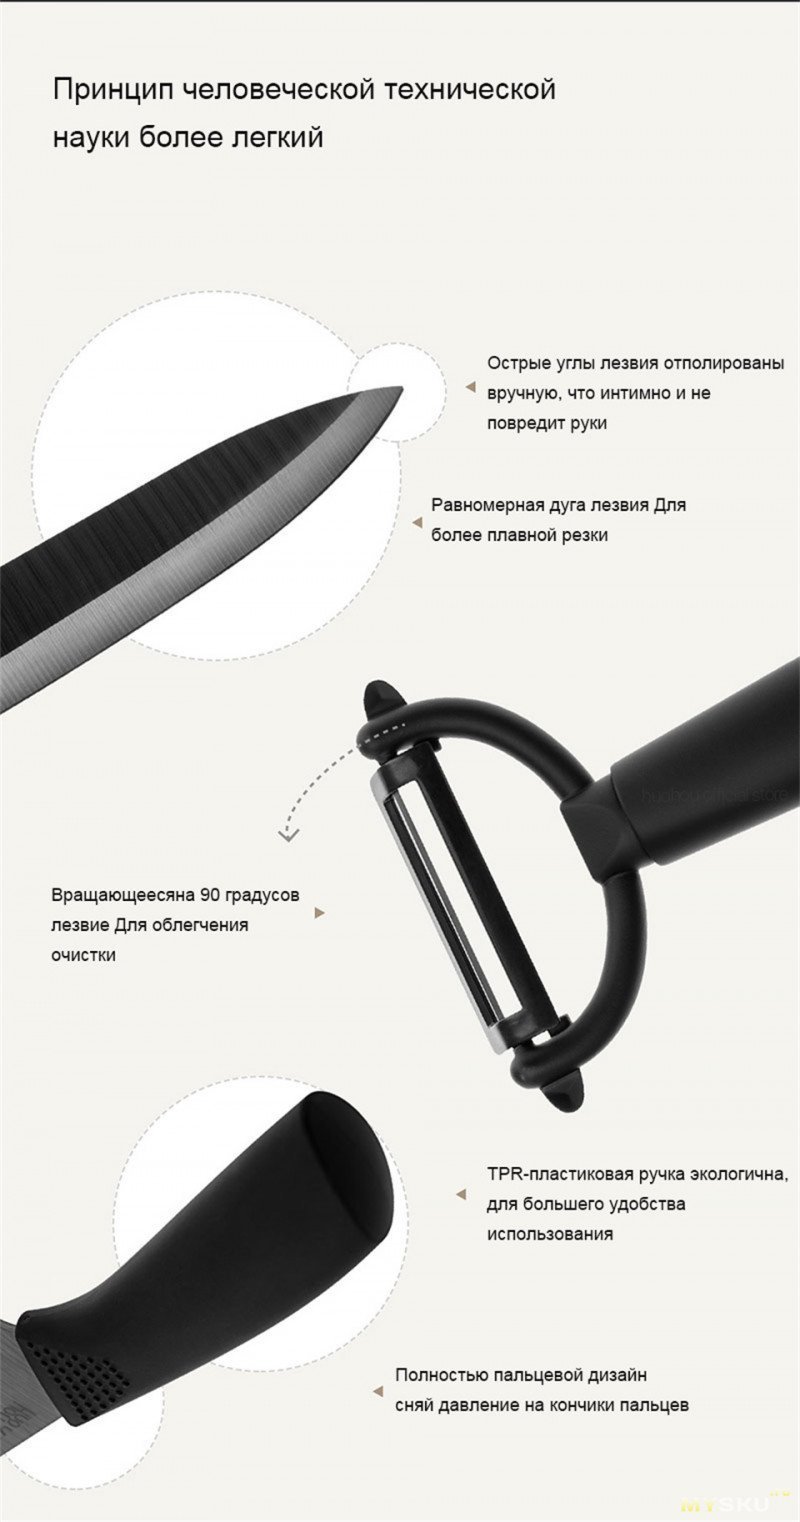 Набор кухонных ножей Xiaomi huohou из керамики за 20.20$ с 28.03